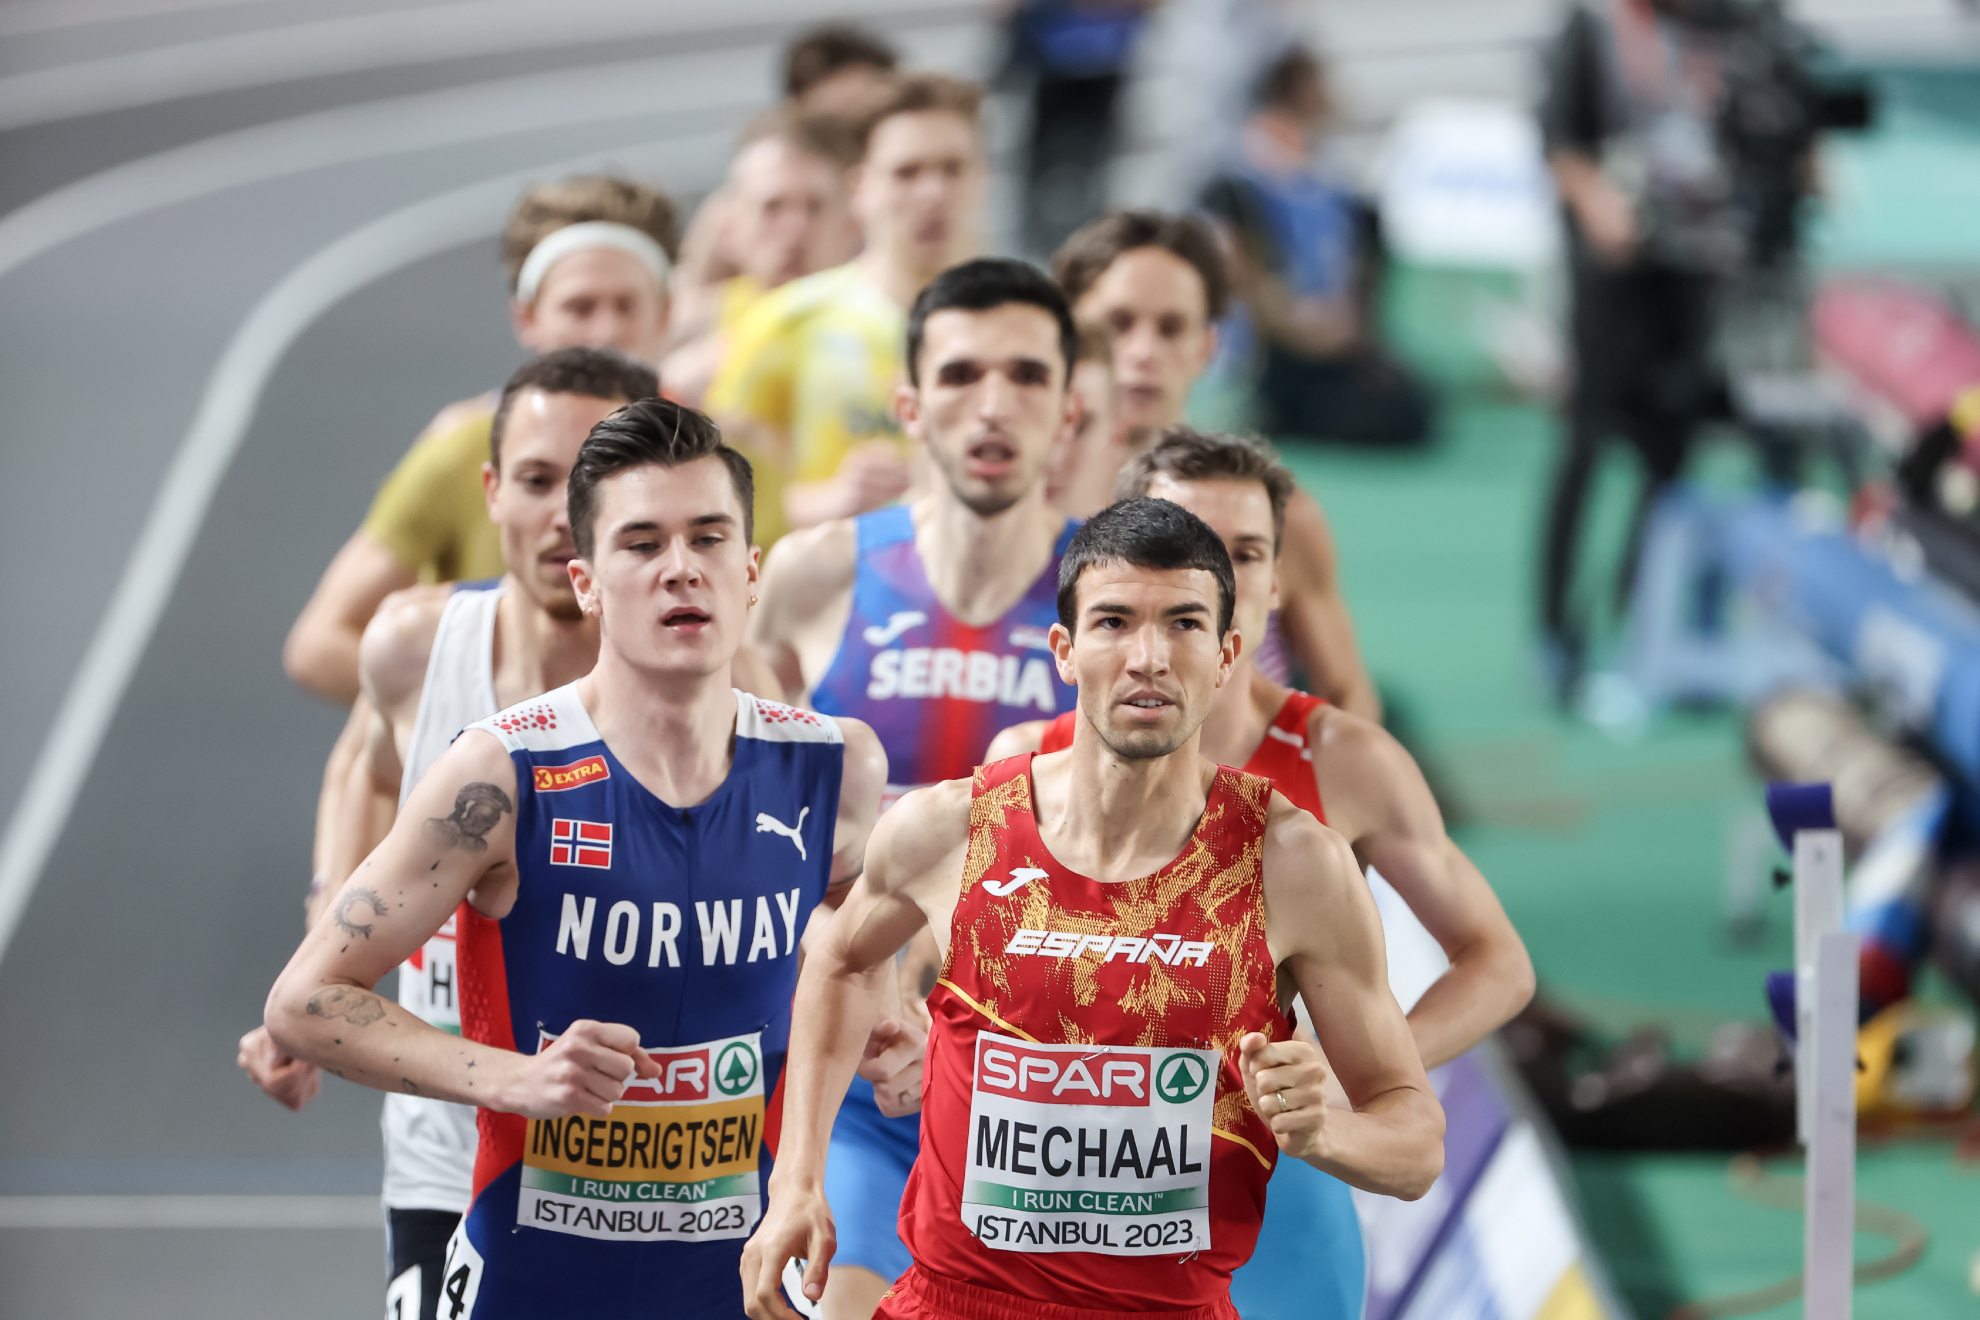 Jakob Ingebrigtsen y Adel Mechaal en la final de los 3.000 metros del Europeo de Estambul.